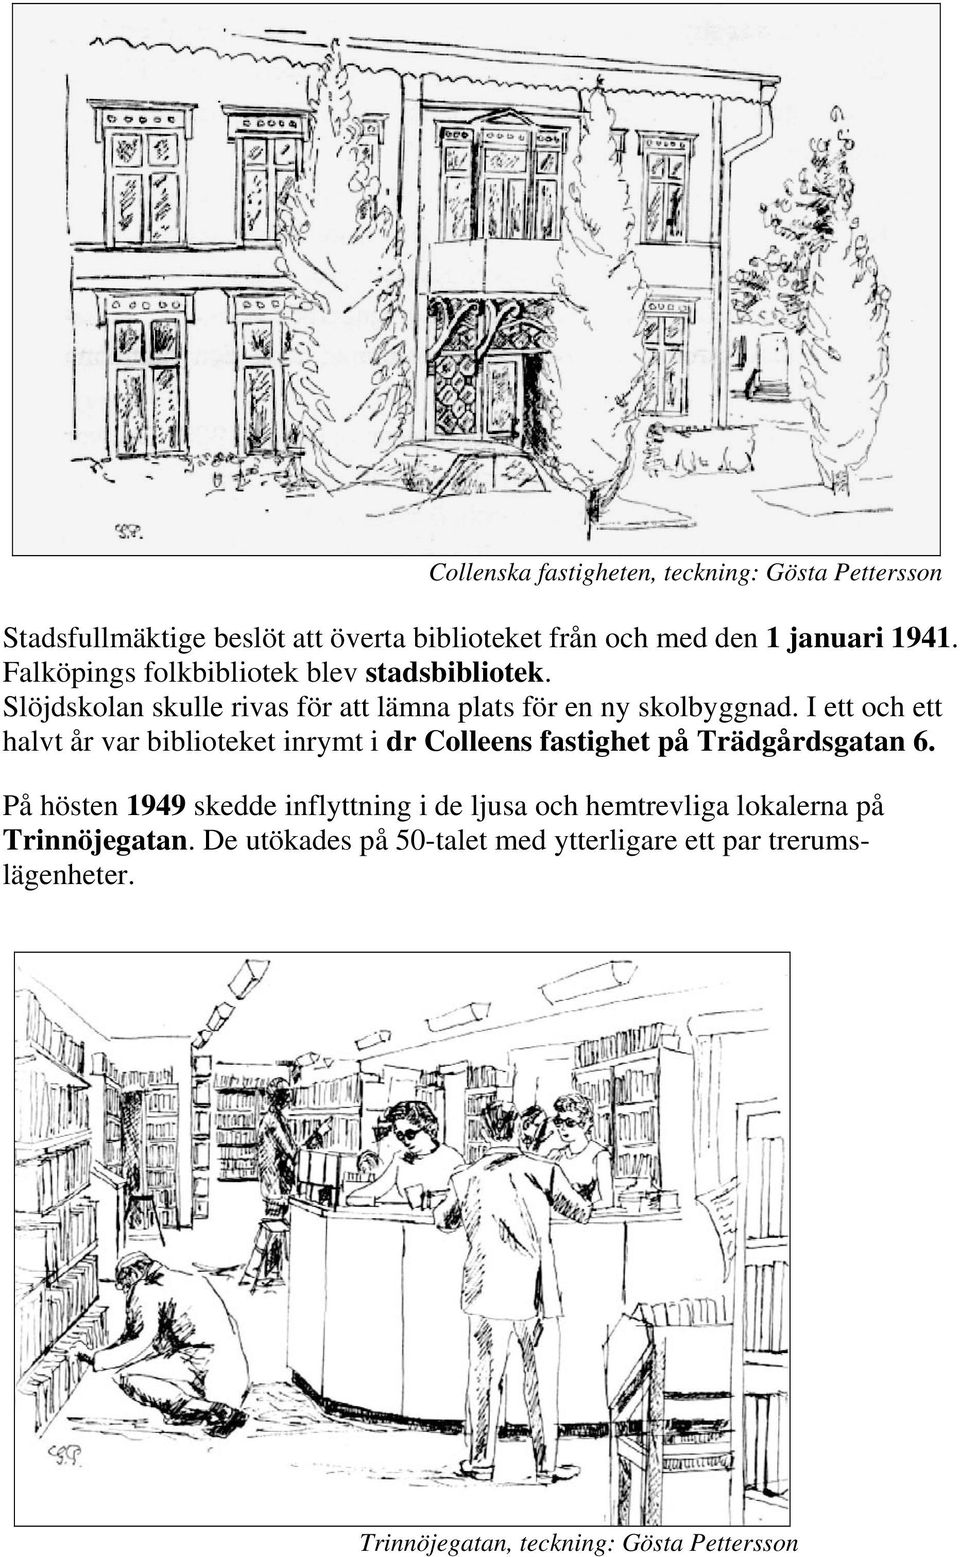 På hösten 1949 skedde inflyttning i de ljusa och hemtrevliga lokalerna på Trinnöjegatan. De utökades på 50-talet med ytterligare ett par trerumslägenheter.